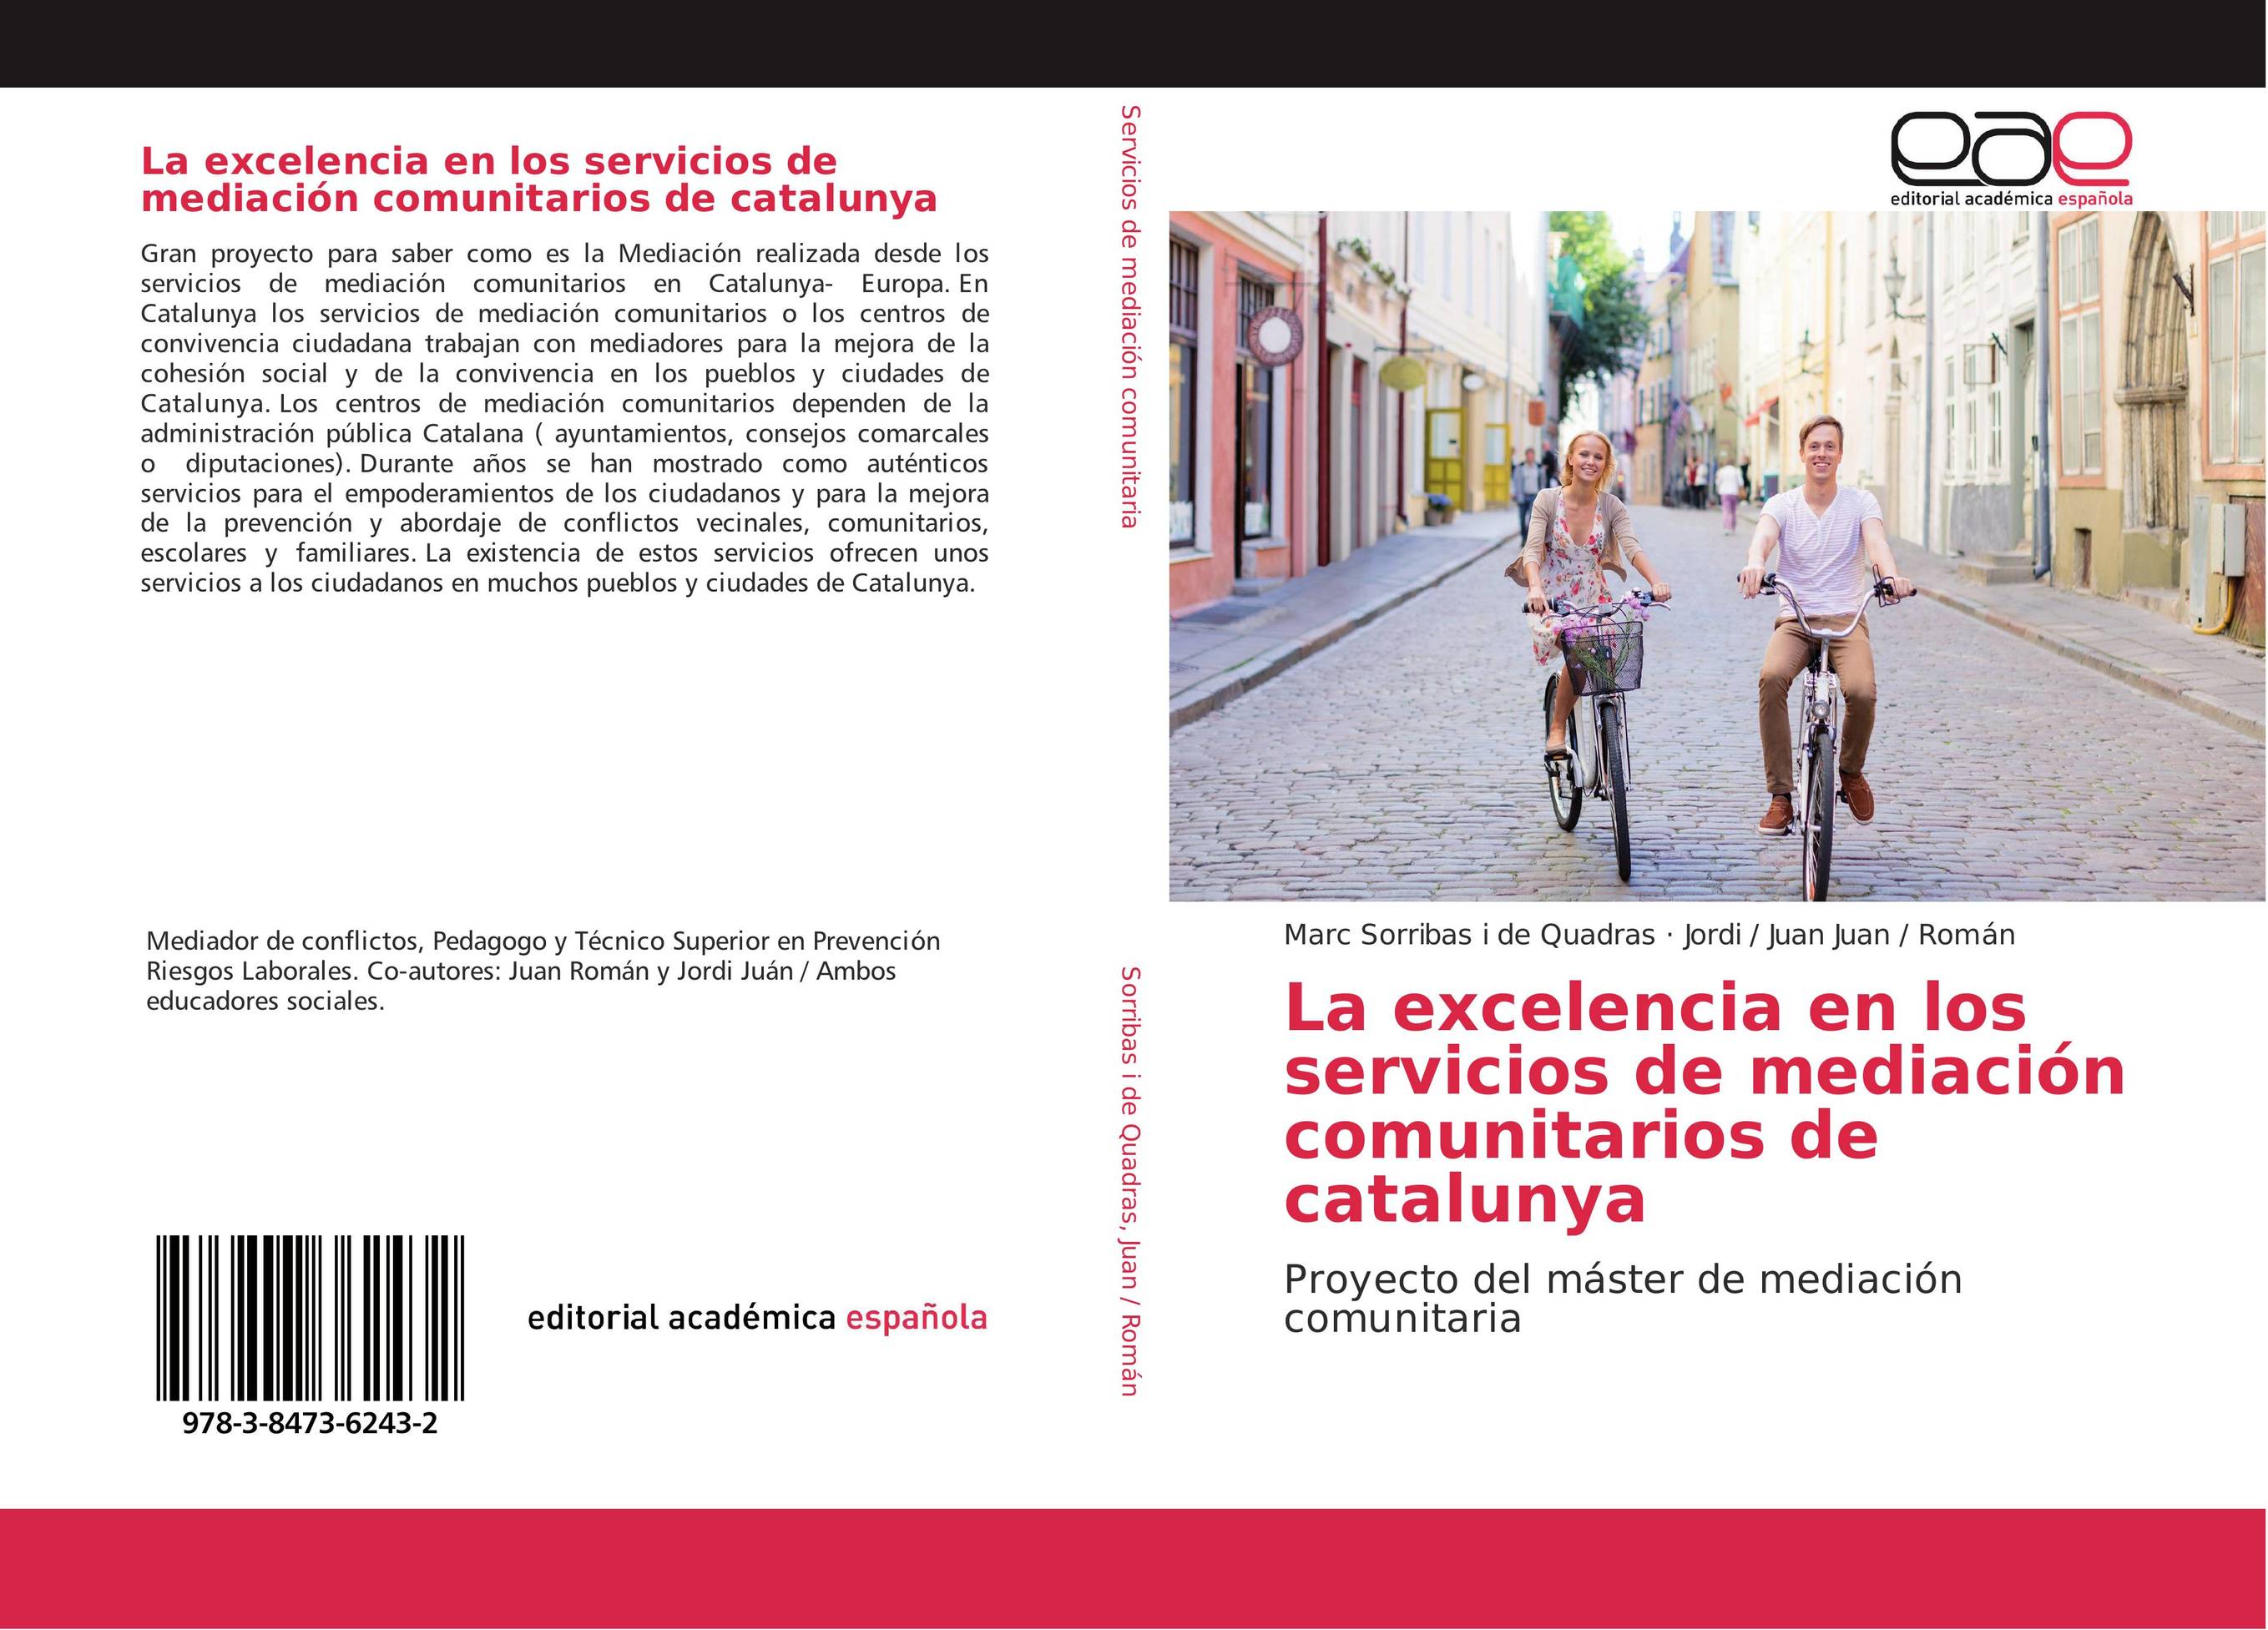 La excelencia en los servicios de mediación comunitarios de catalunya